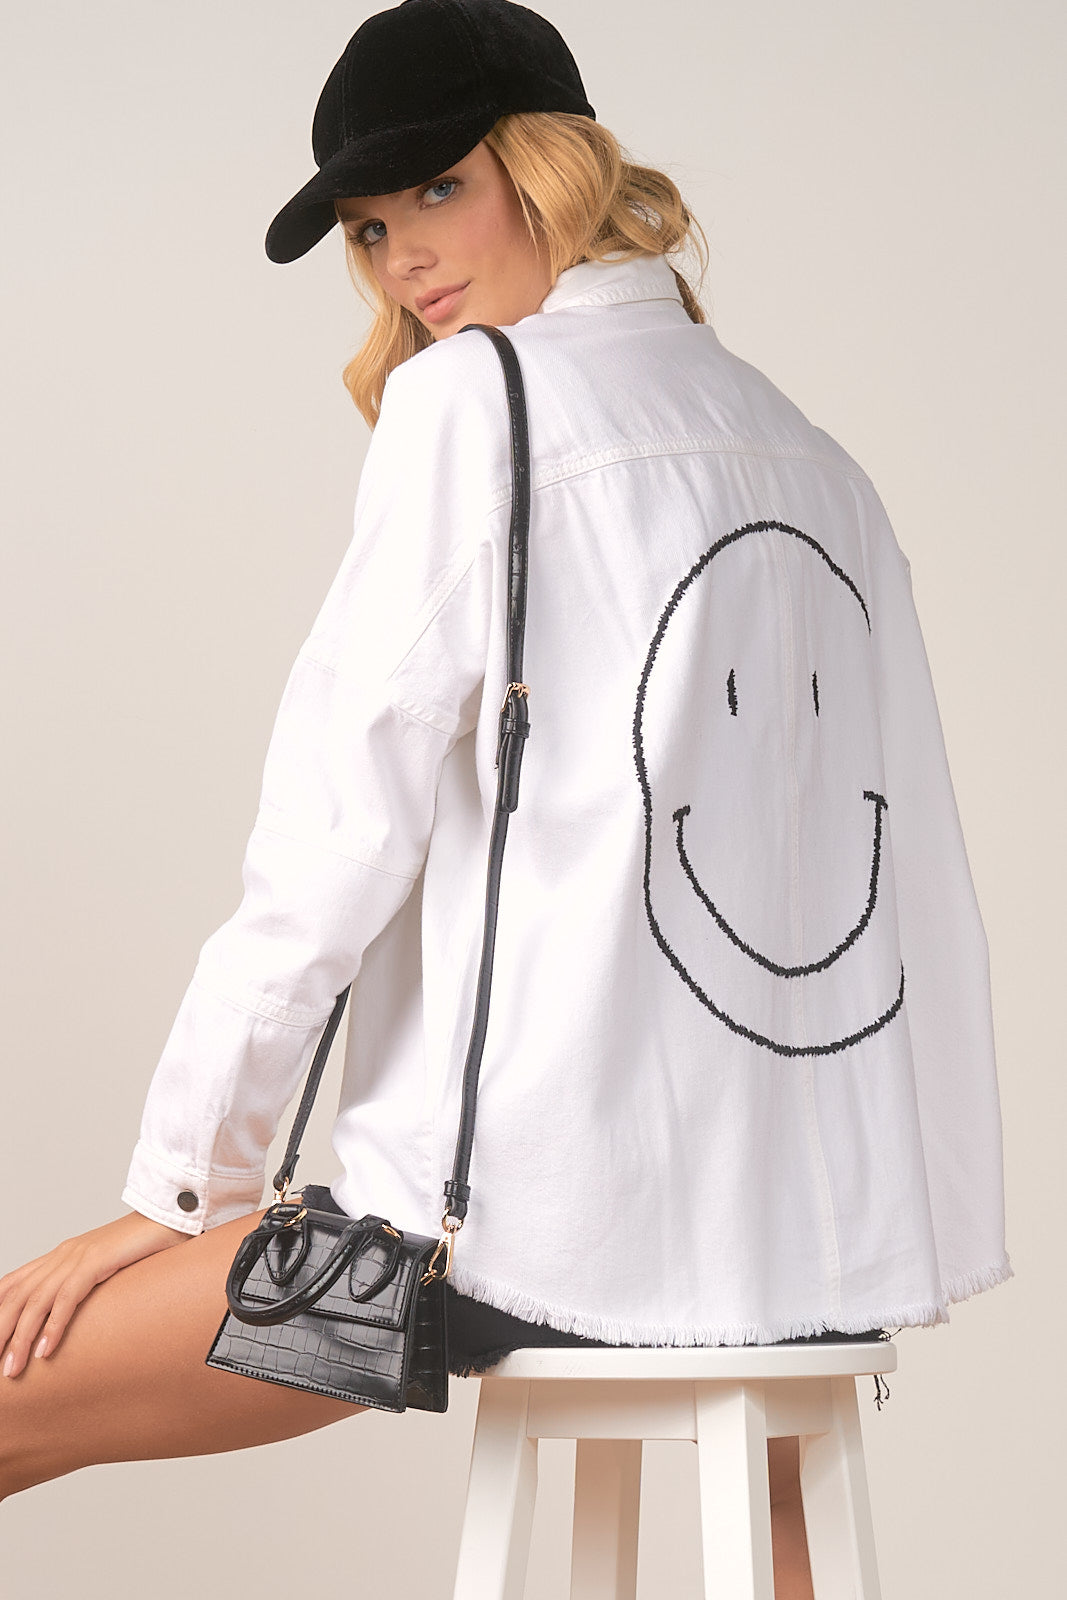 Smiley Jacket